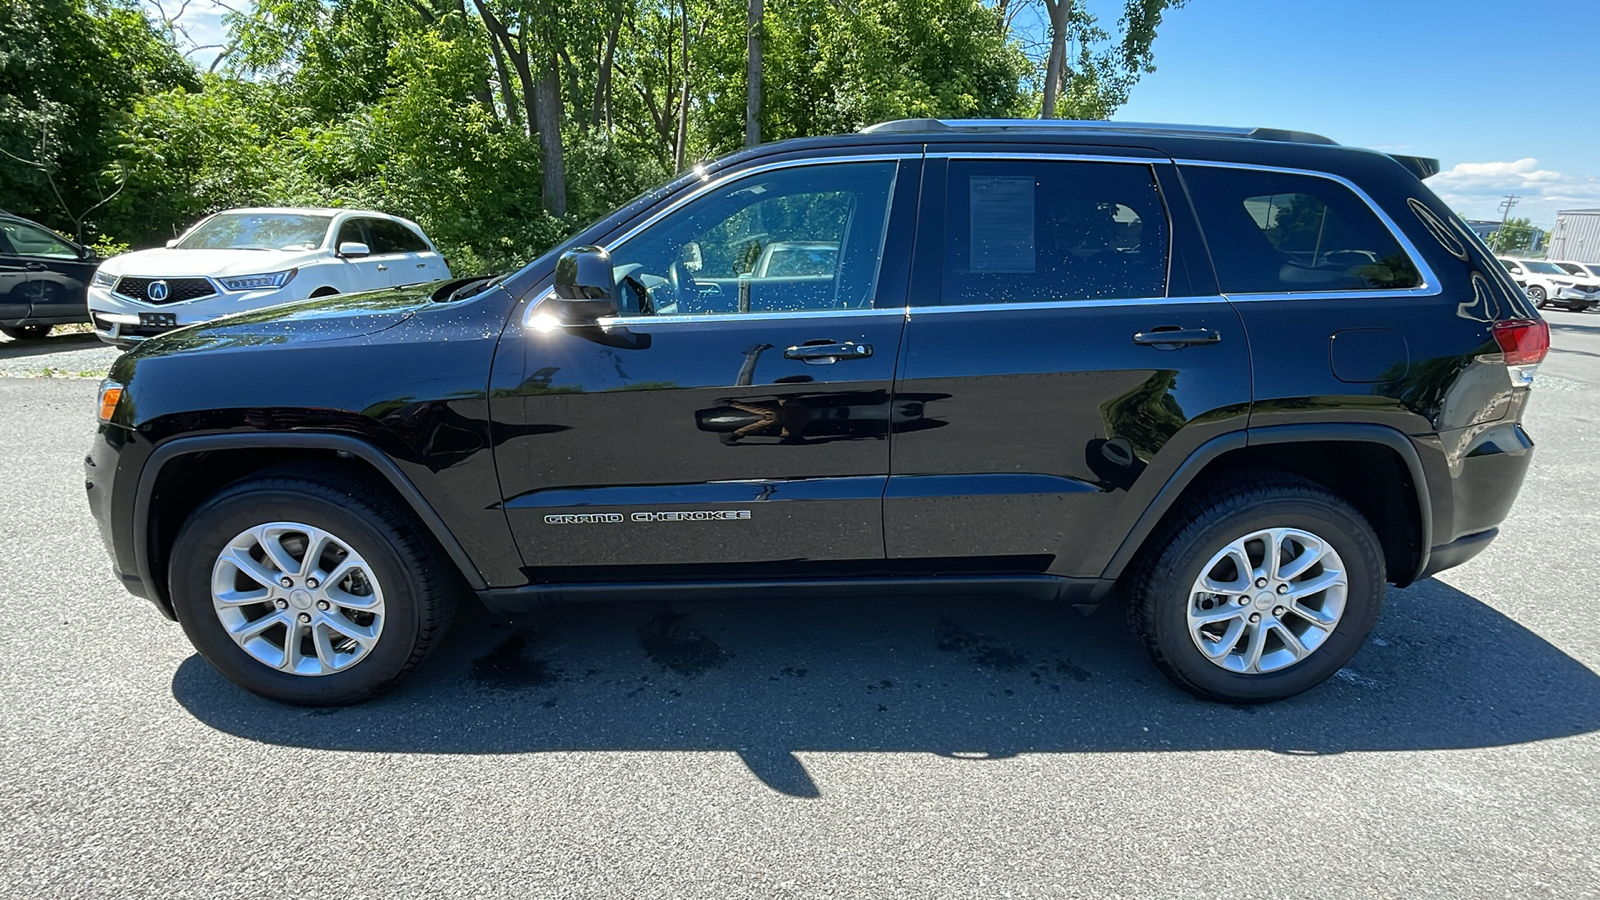 2021 Jeep Grand Cherokee Laredo E 5